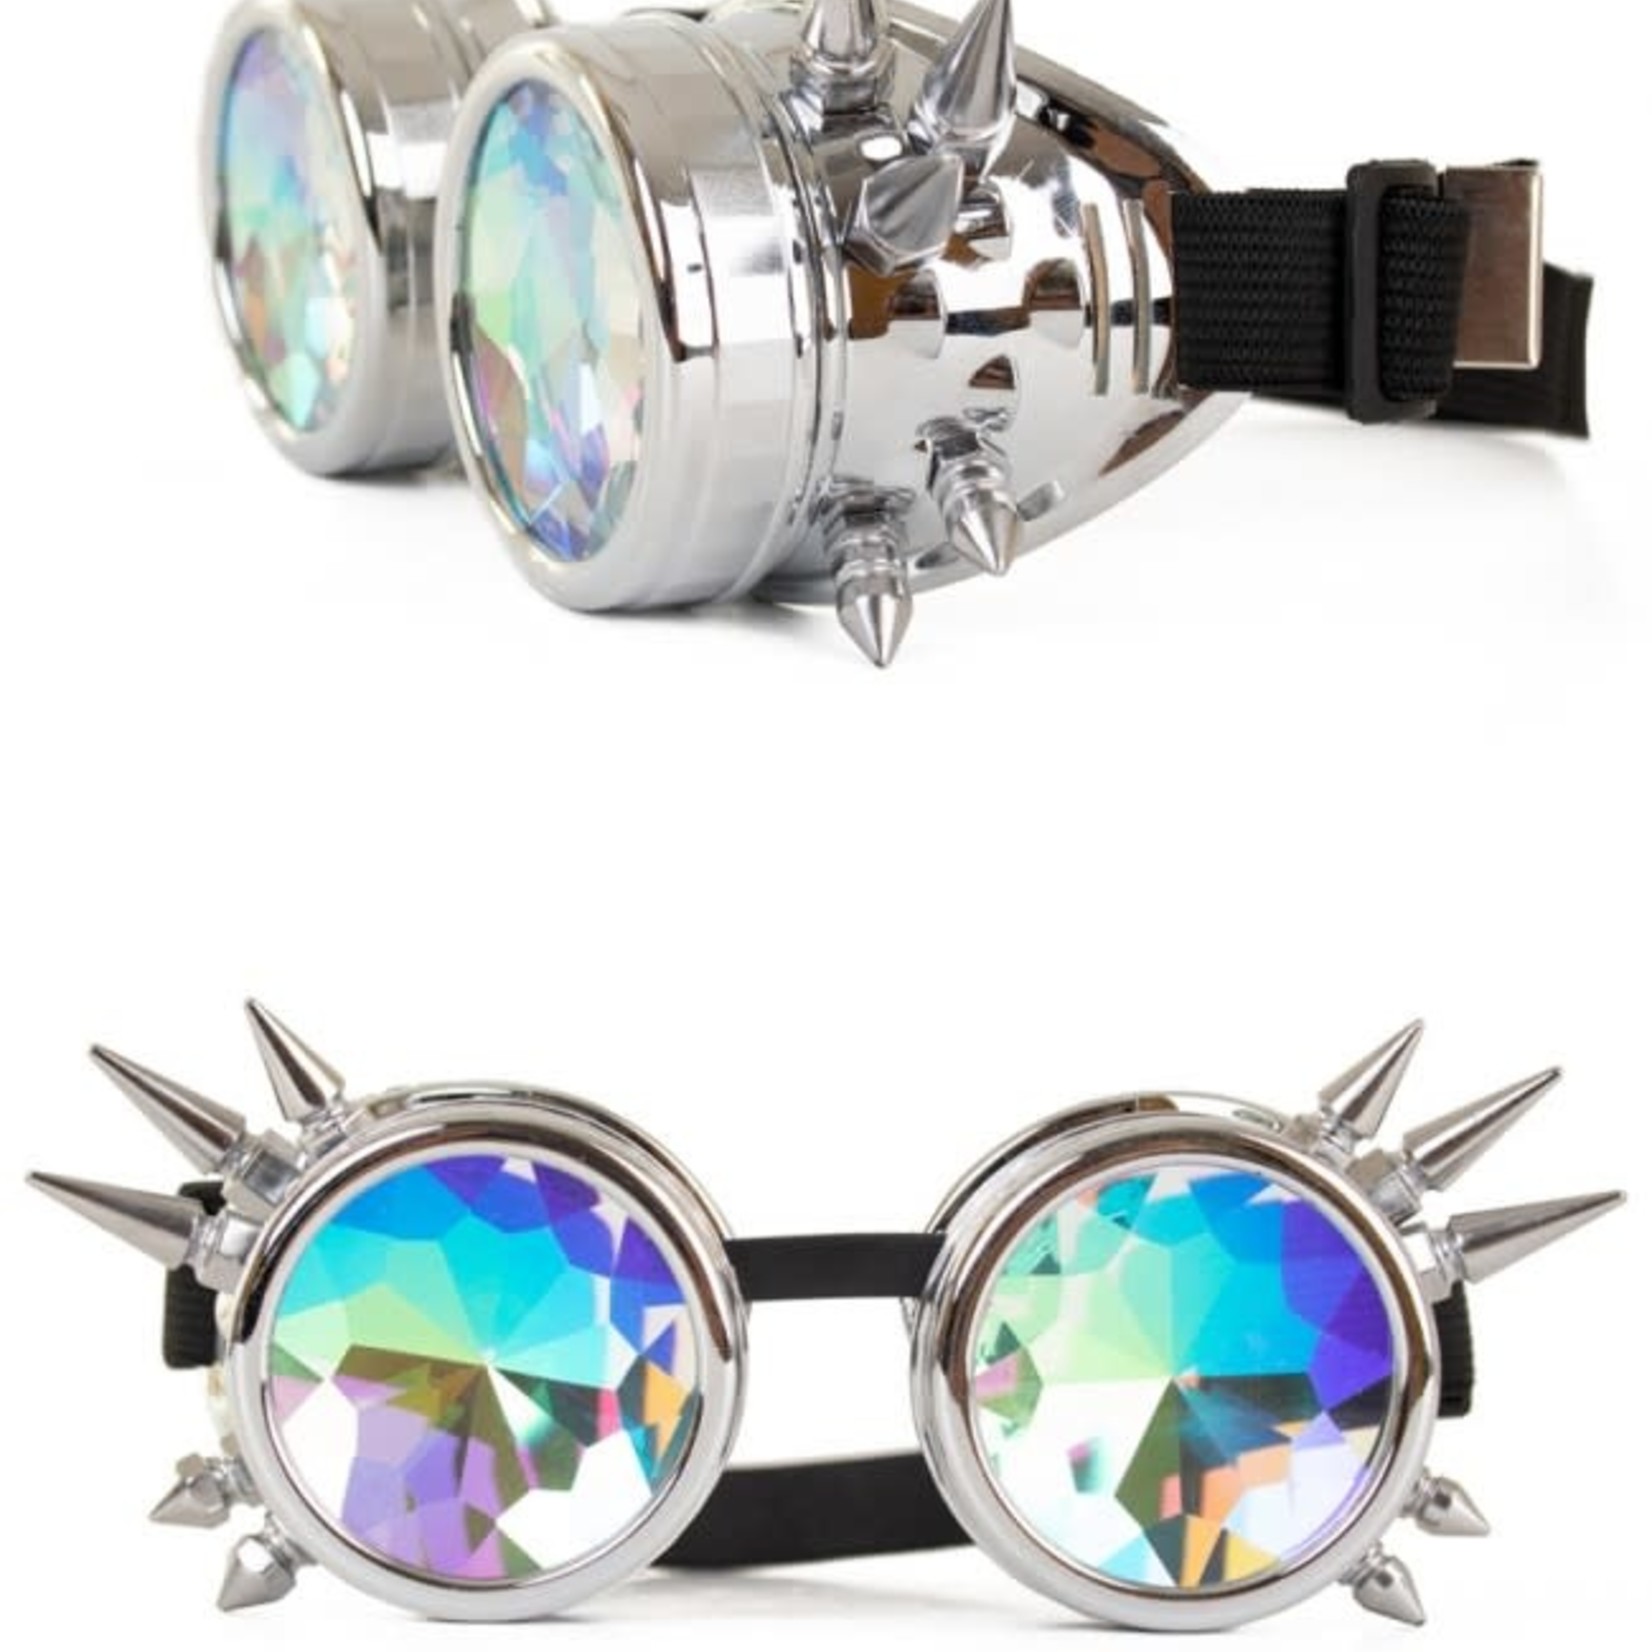 Bazaar Ple4 Steampunkbril zilver